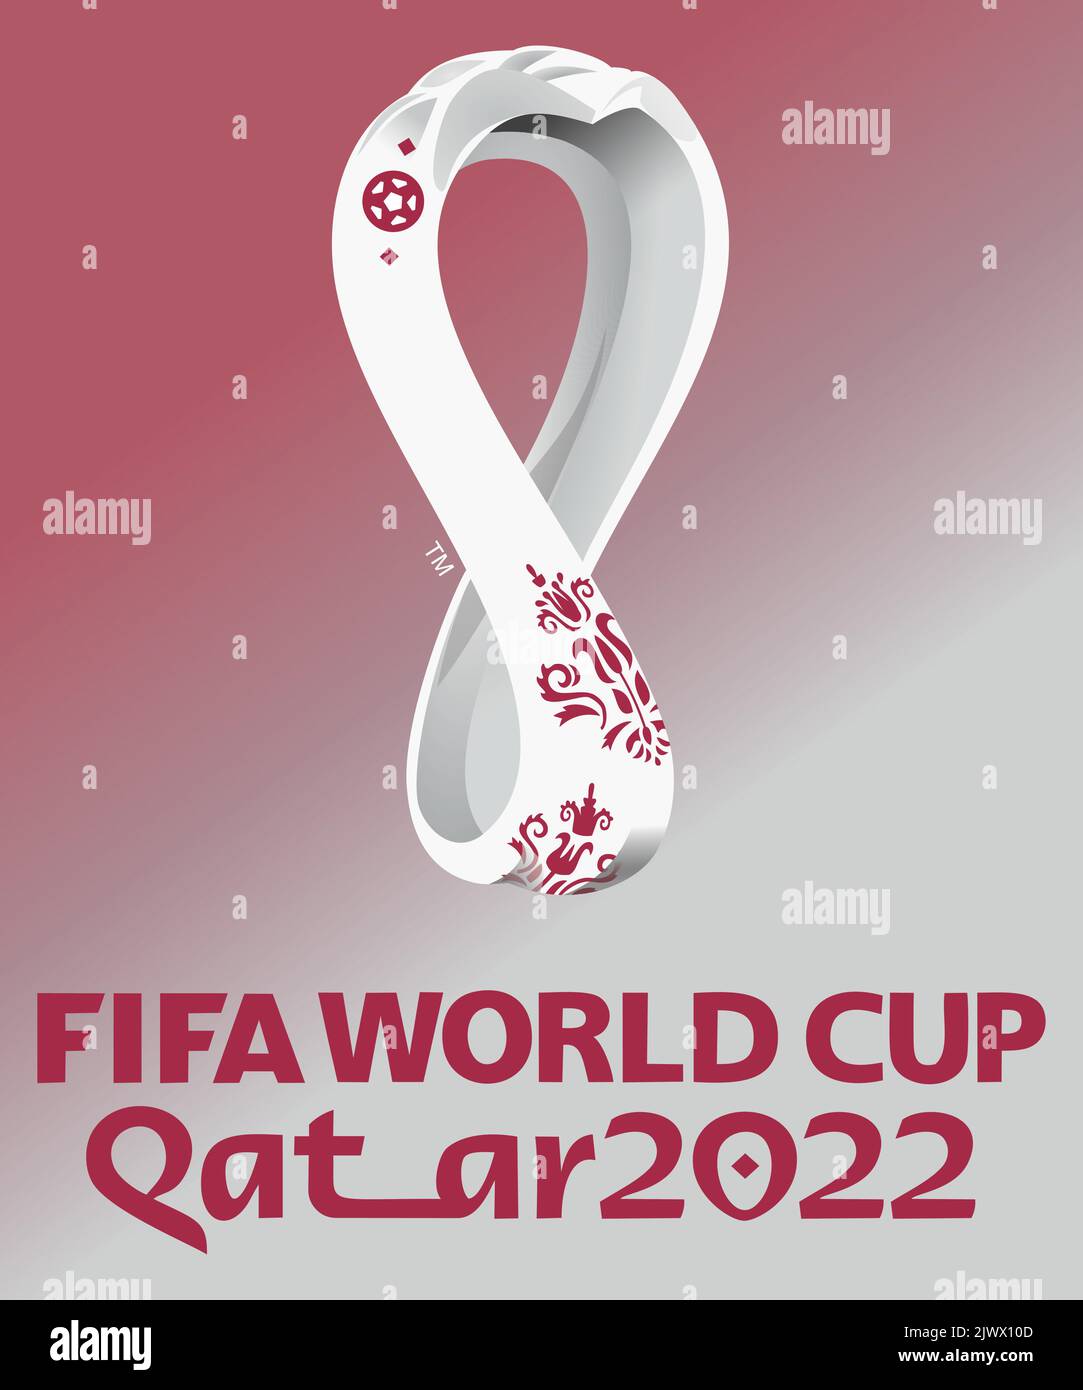 Fifa world cup logo Imágenes vectoriales de stock - Alamy